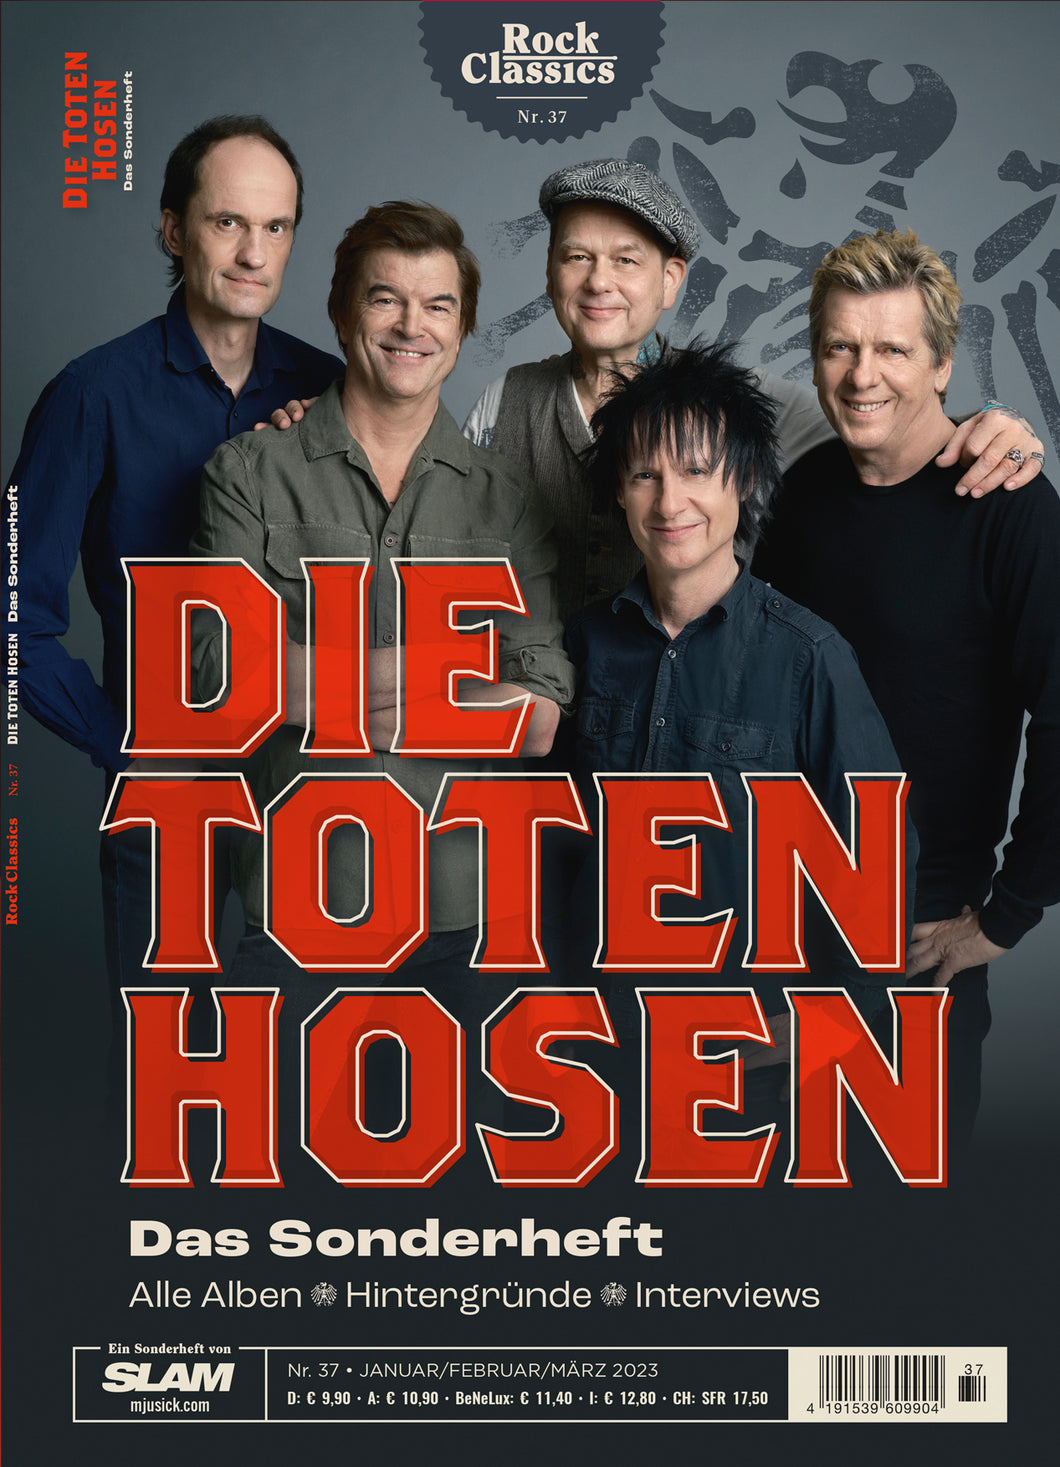 DIE TOTEN HOSEN - Das Sonderheft (ROCK CLASSICS #37)